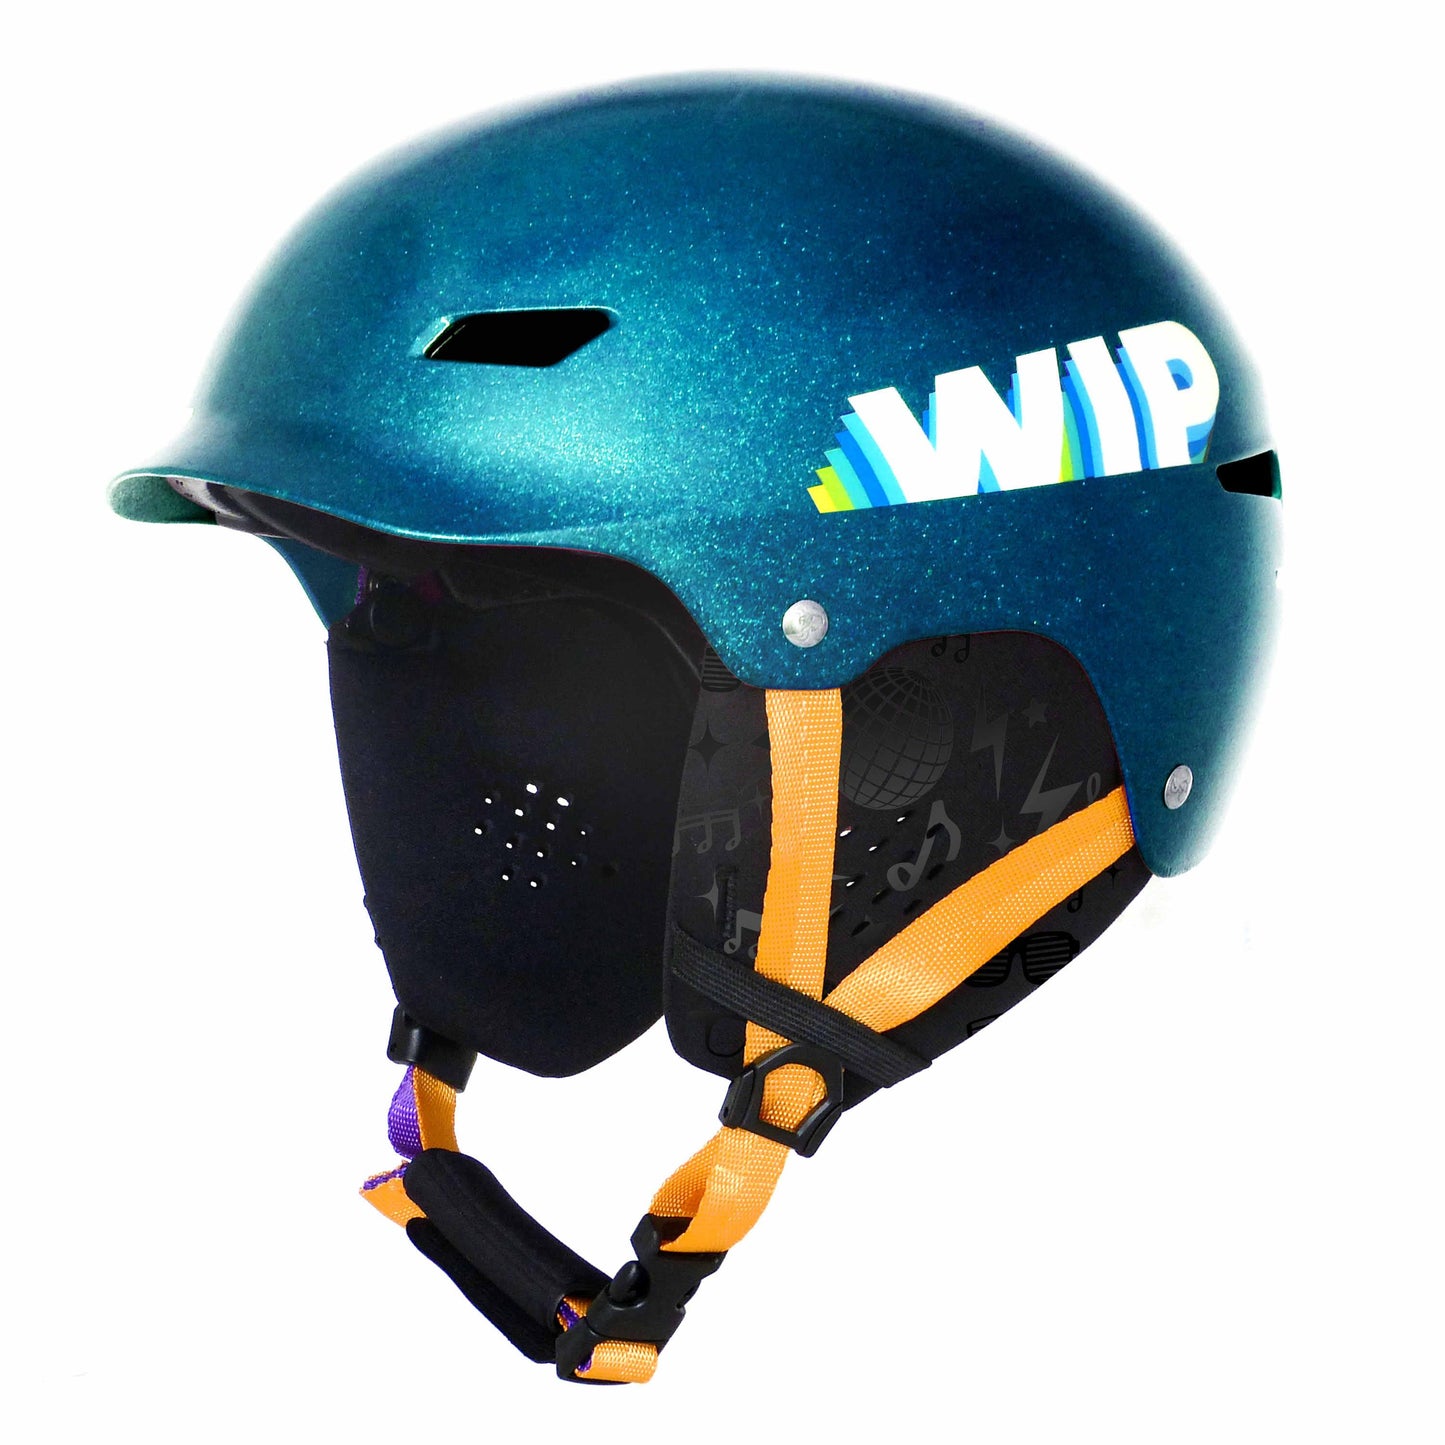 Forward WIP Wipper Helmet - Poole Harbour Watersports